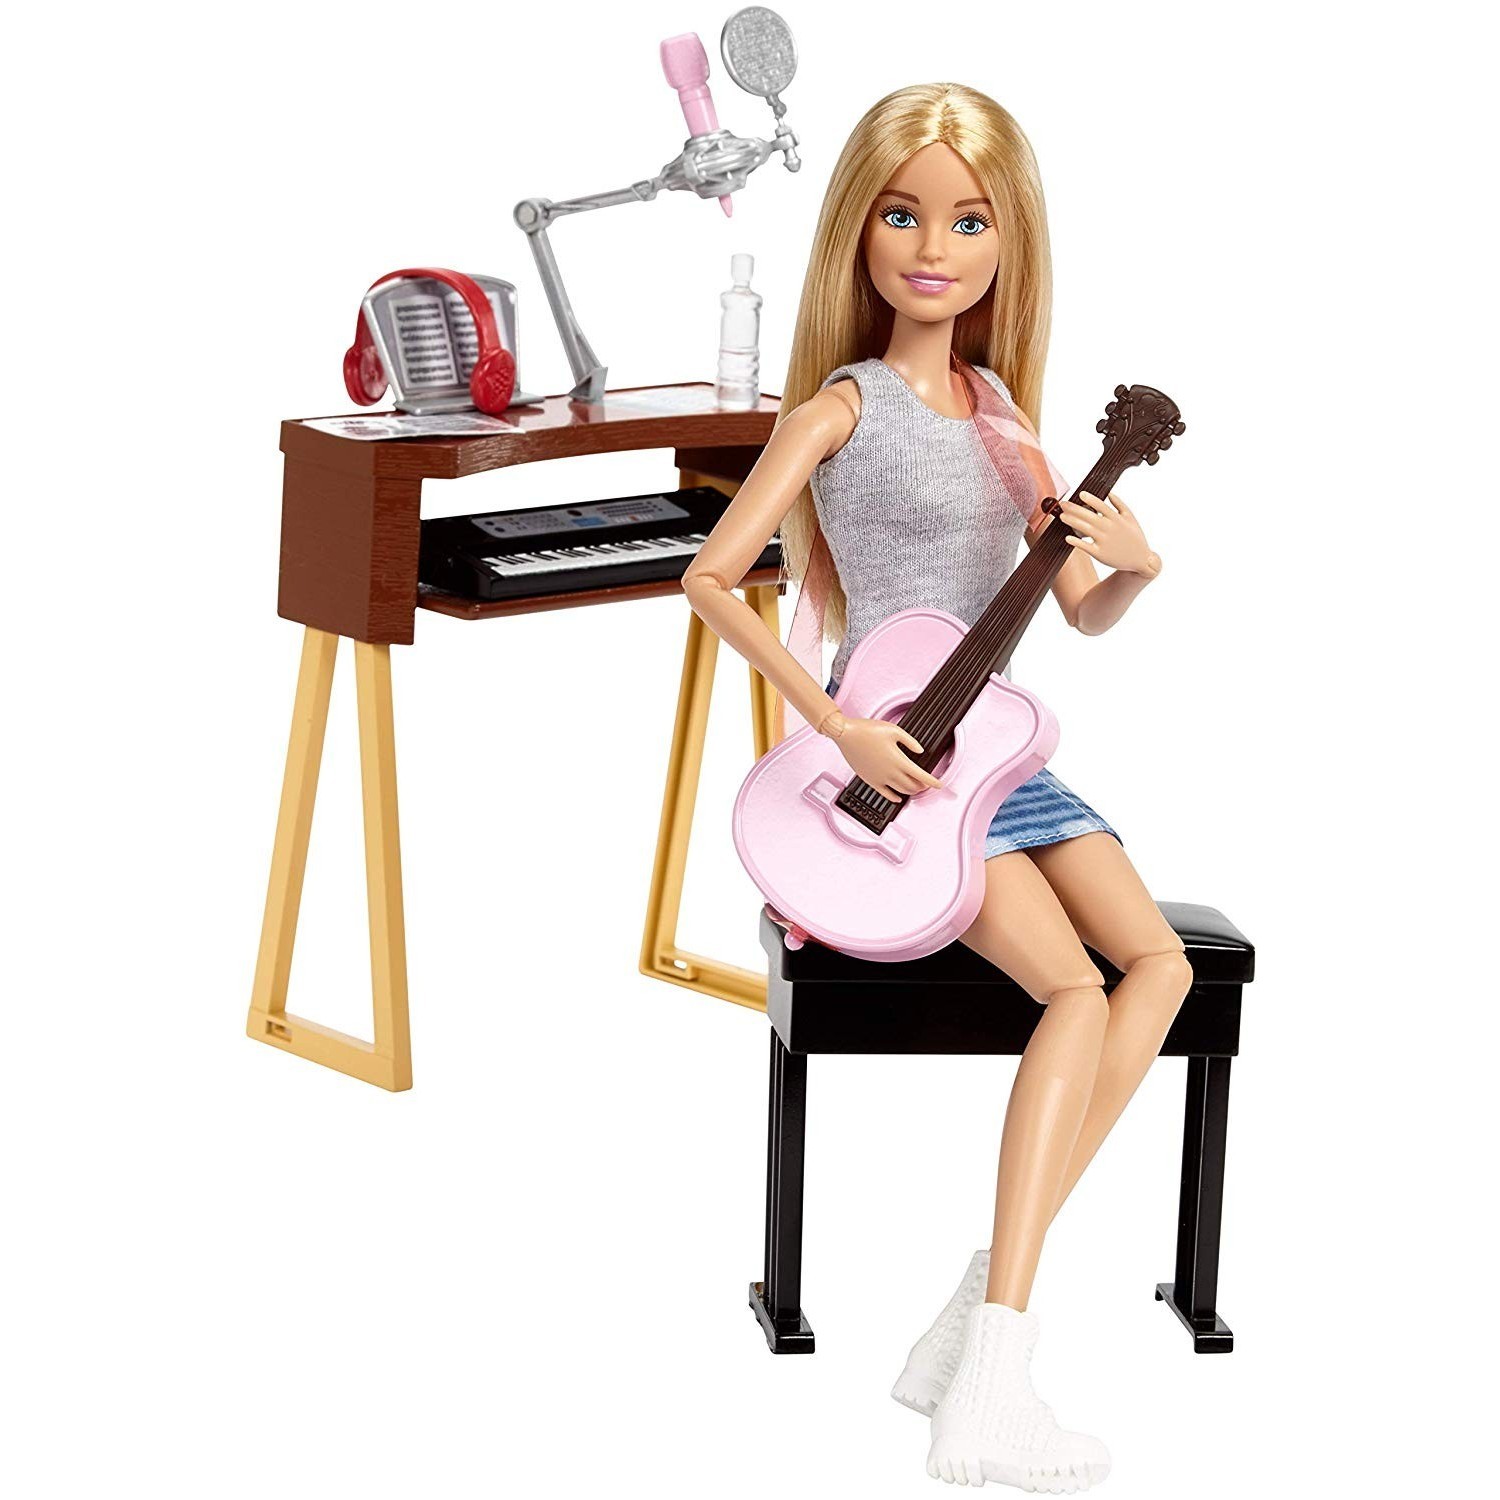 Музыка куклы детские. Кукла Barbie музыкант с гитарой и синтезатором, 29 см, fcp73. Кукла Барби музыкантка безграничные движения. Кукла Барби с пианино. Барби кукла музыкант синтезатор.